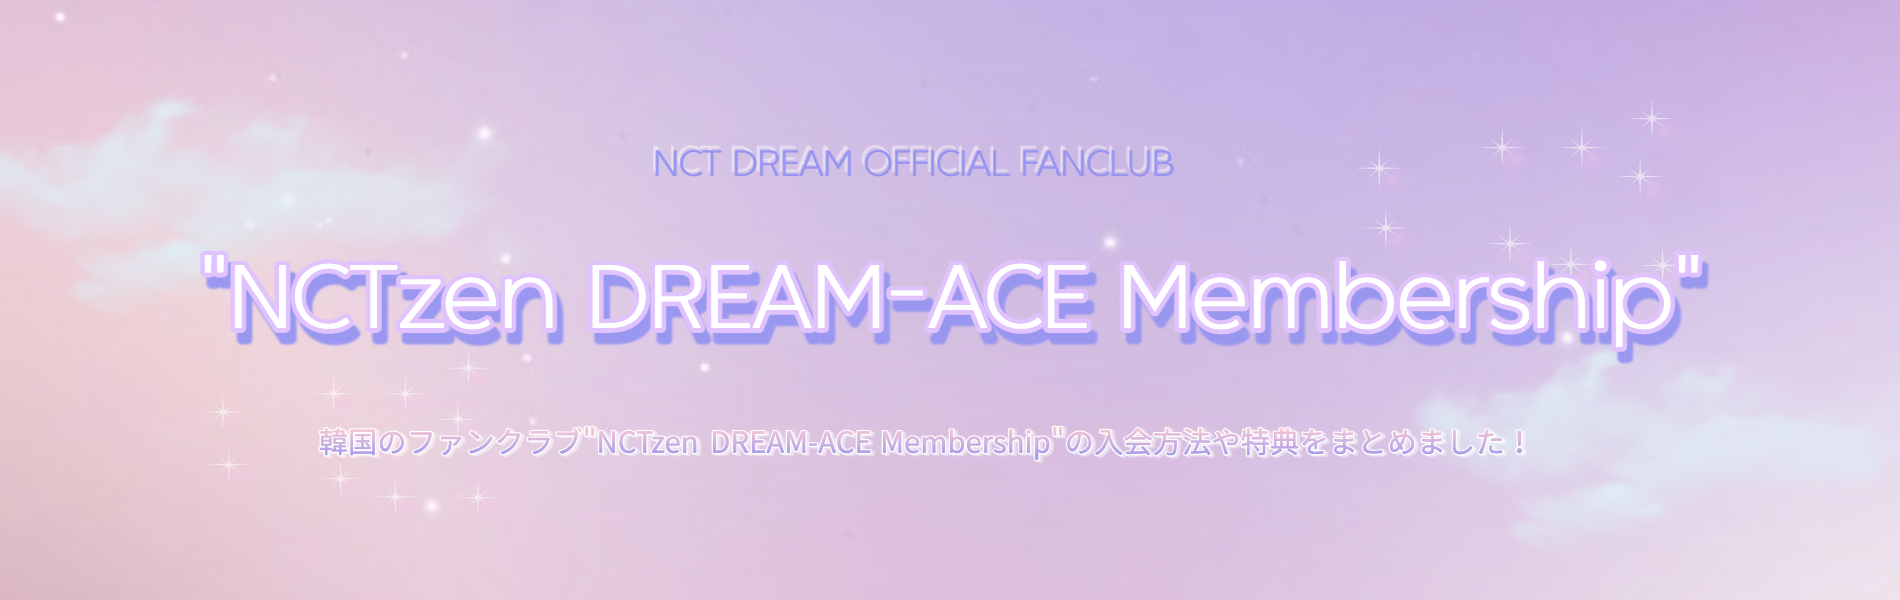 https://dreamy-xxx.com/nct-dream-korea-fanclub/